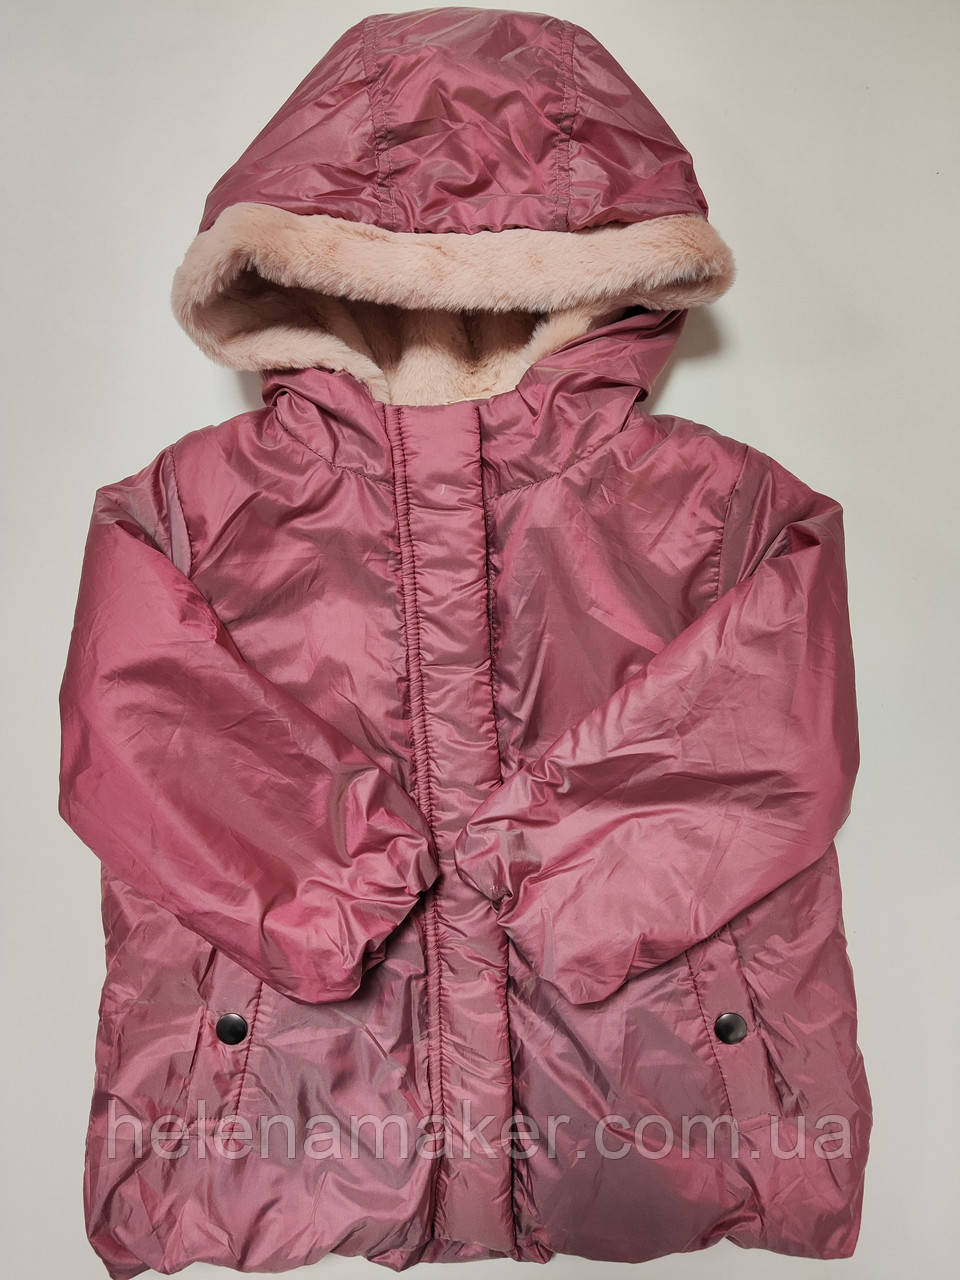 NEXT Дитяча водонепроникна весняна курточка для дівчинки рожева 98 см